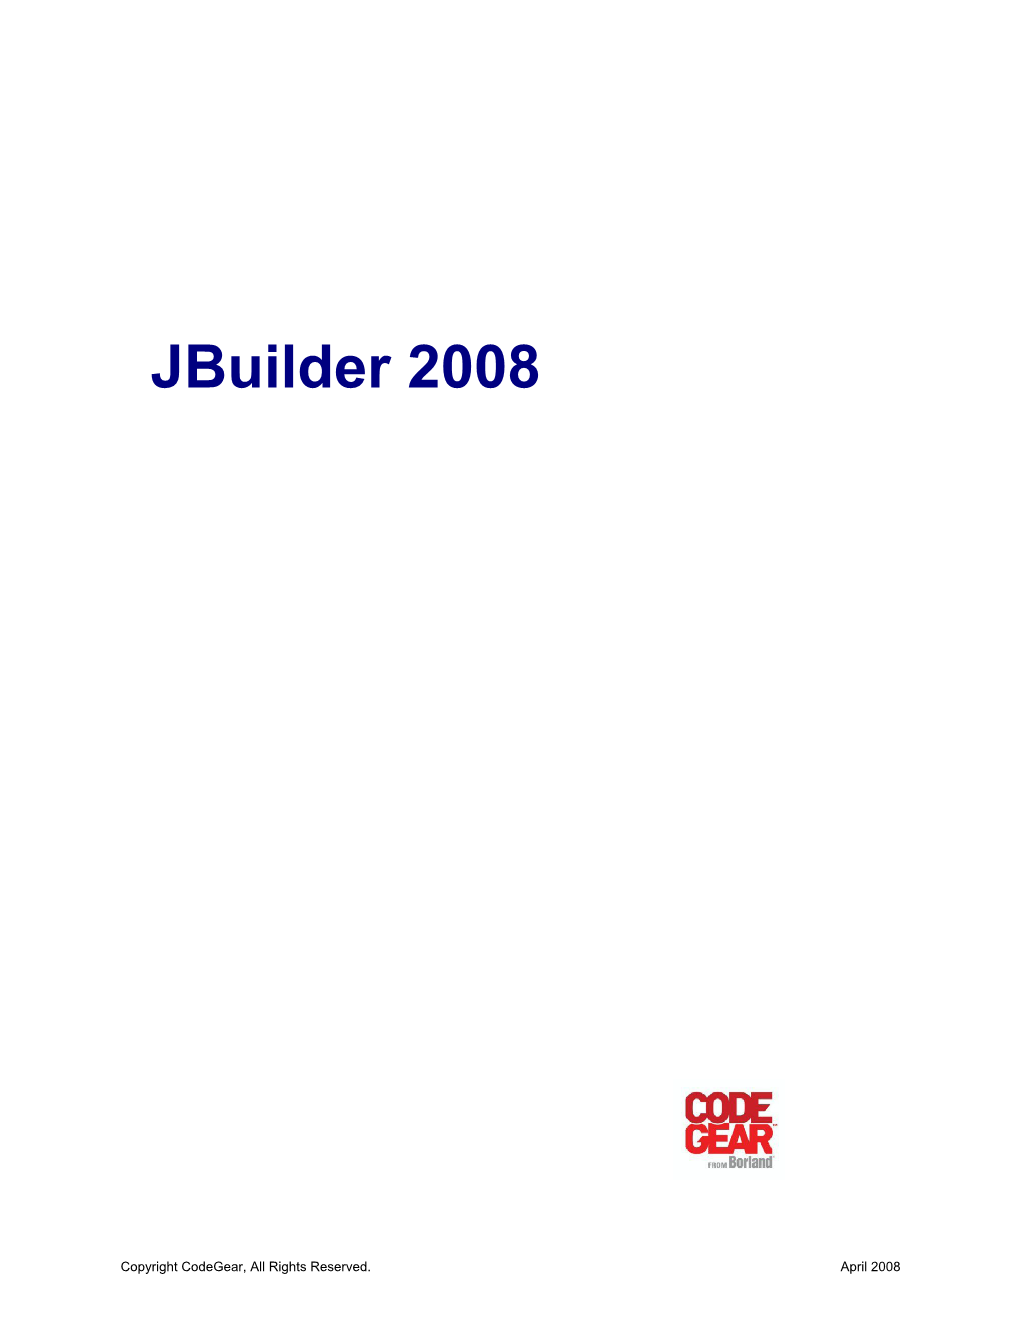 Jbuilder 2008